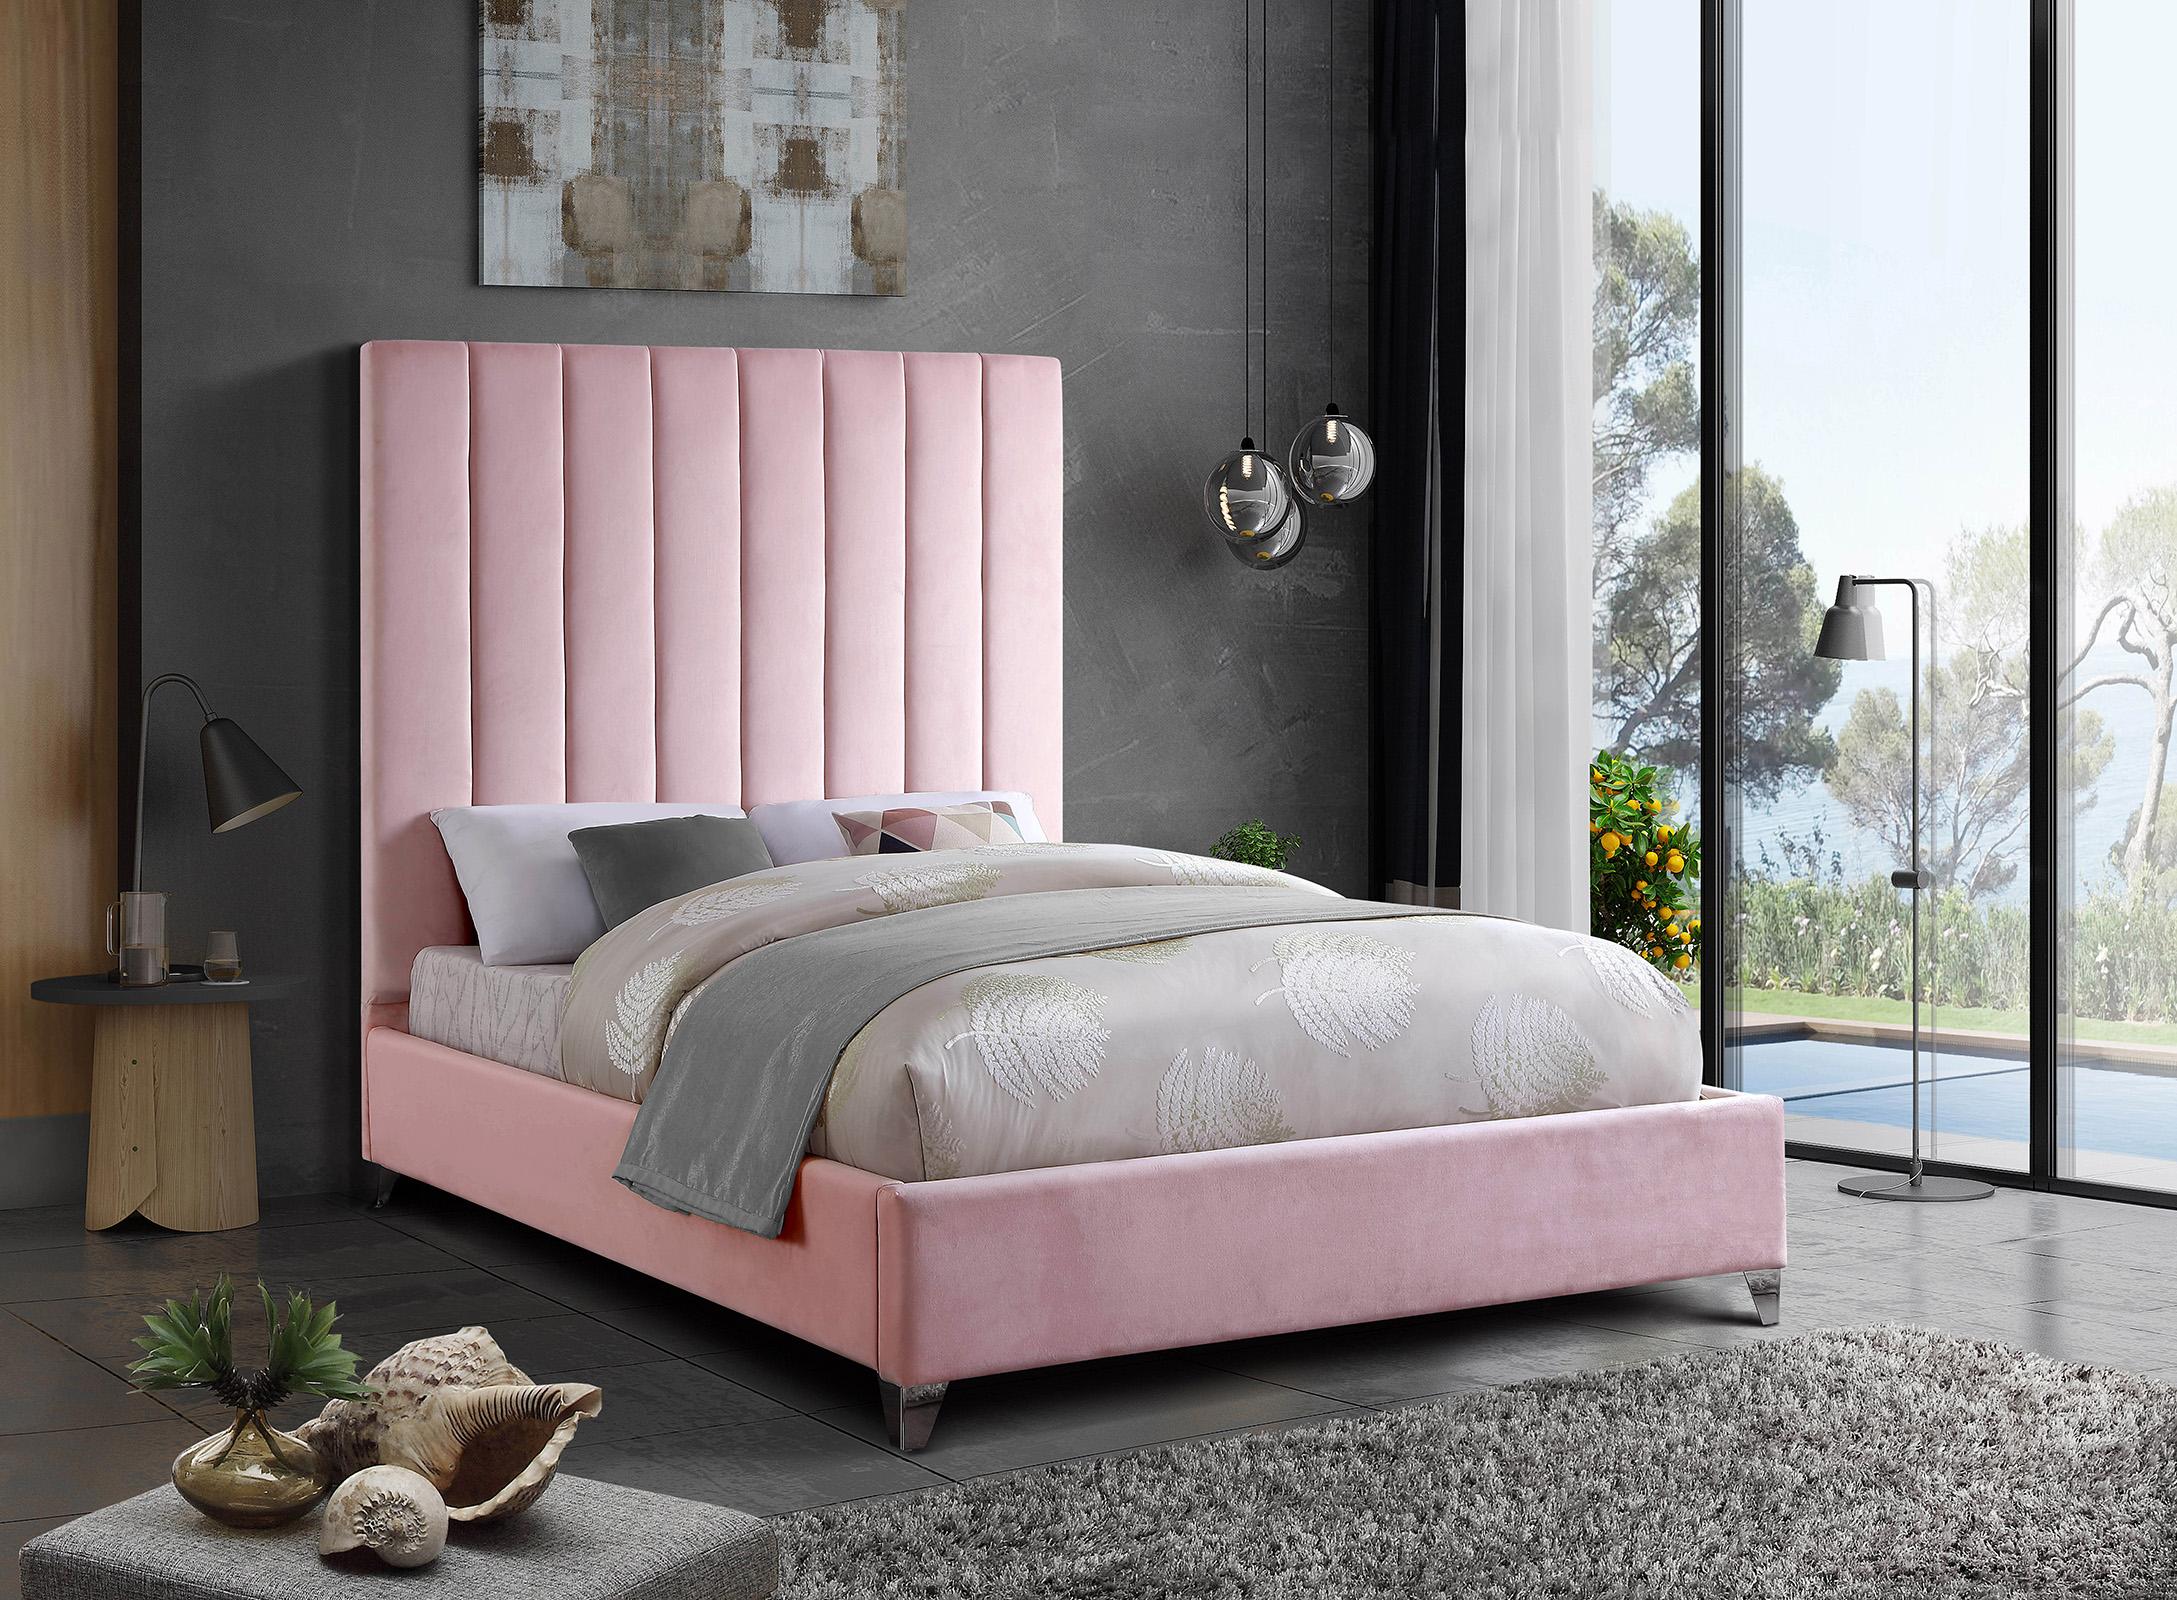 

    
ViaPink-Q Meridian Furniture Platform Bed
